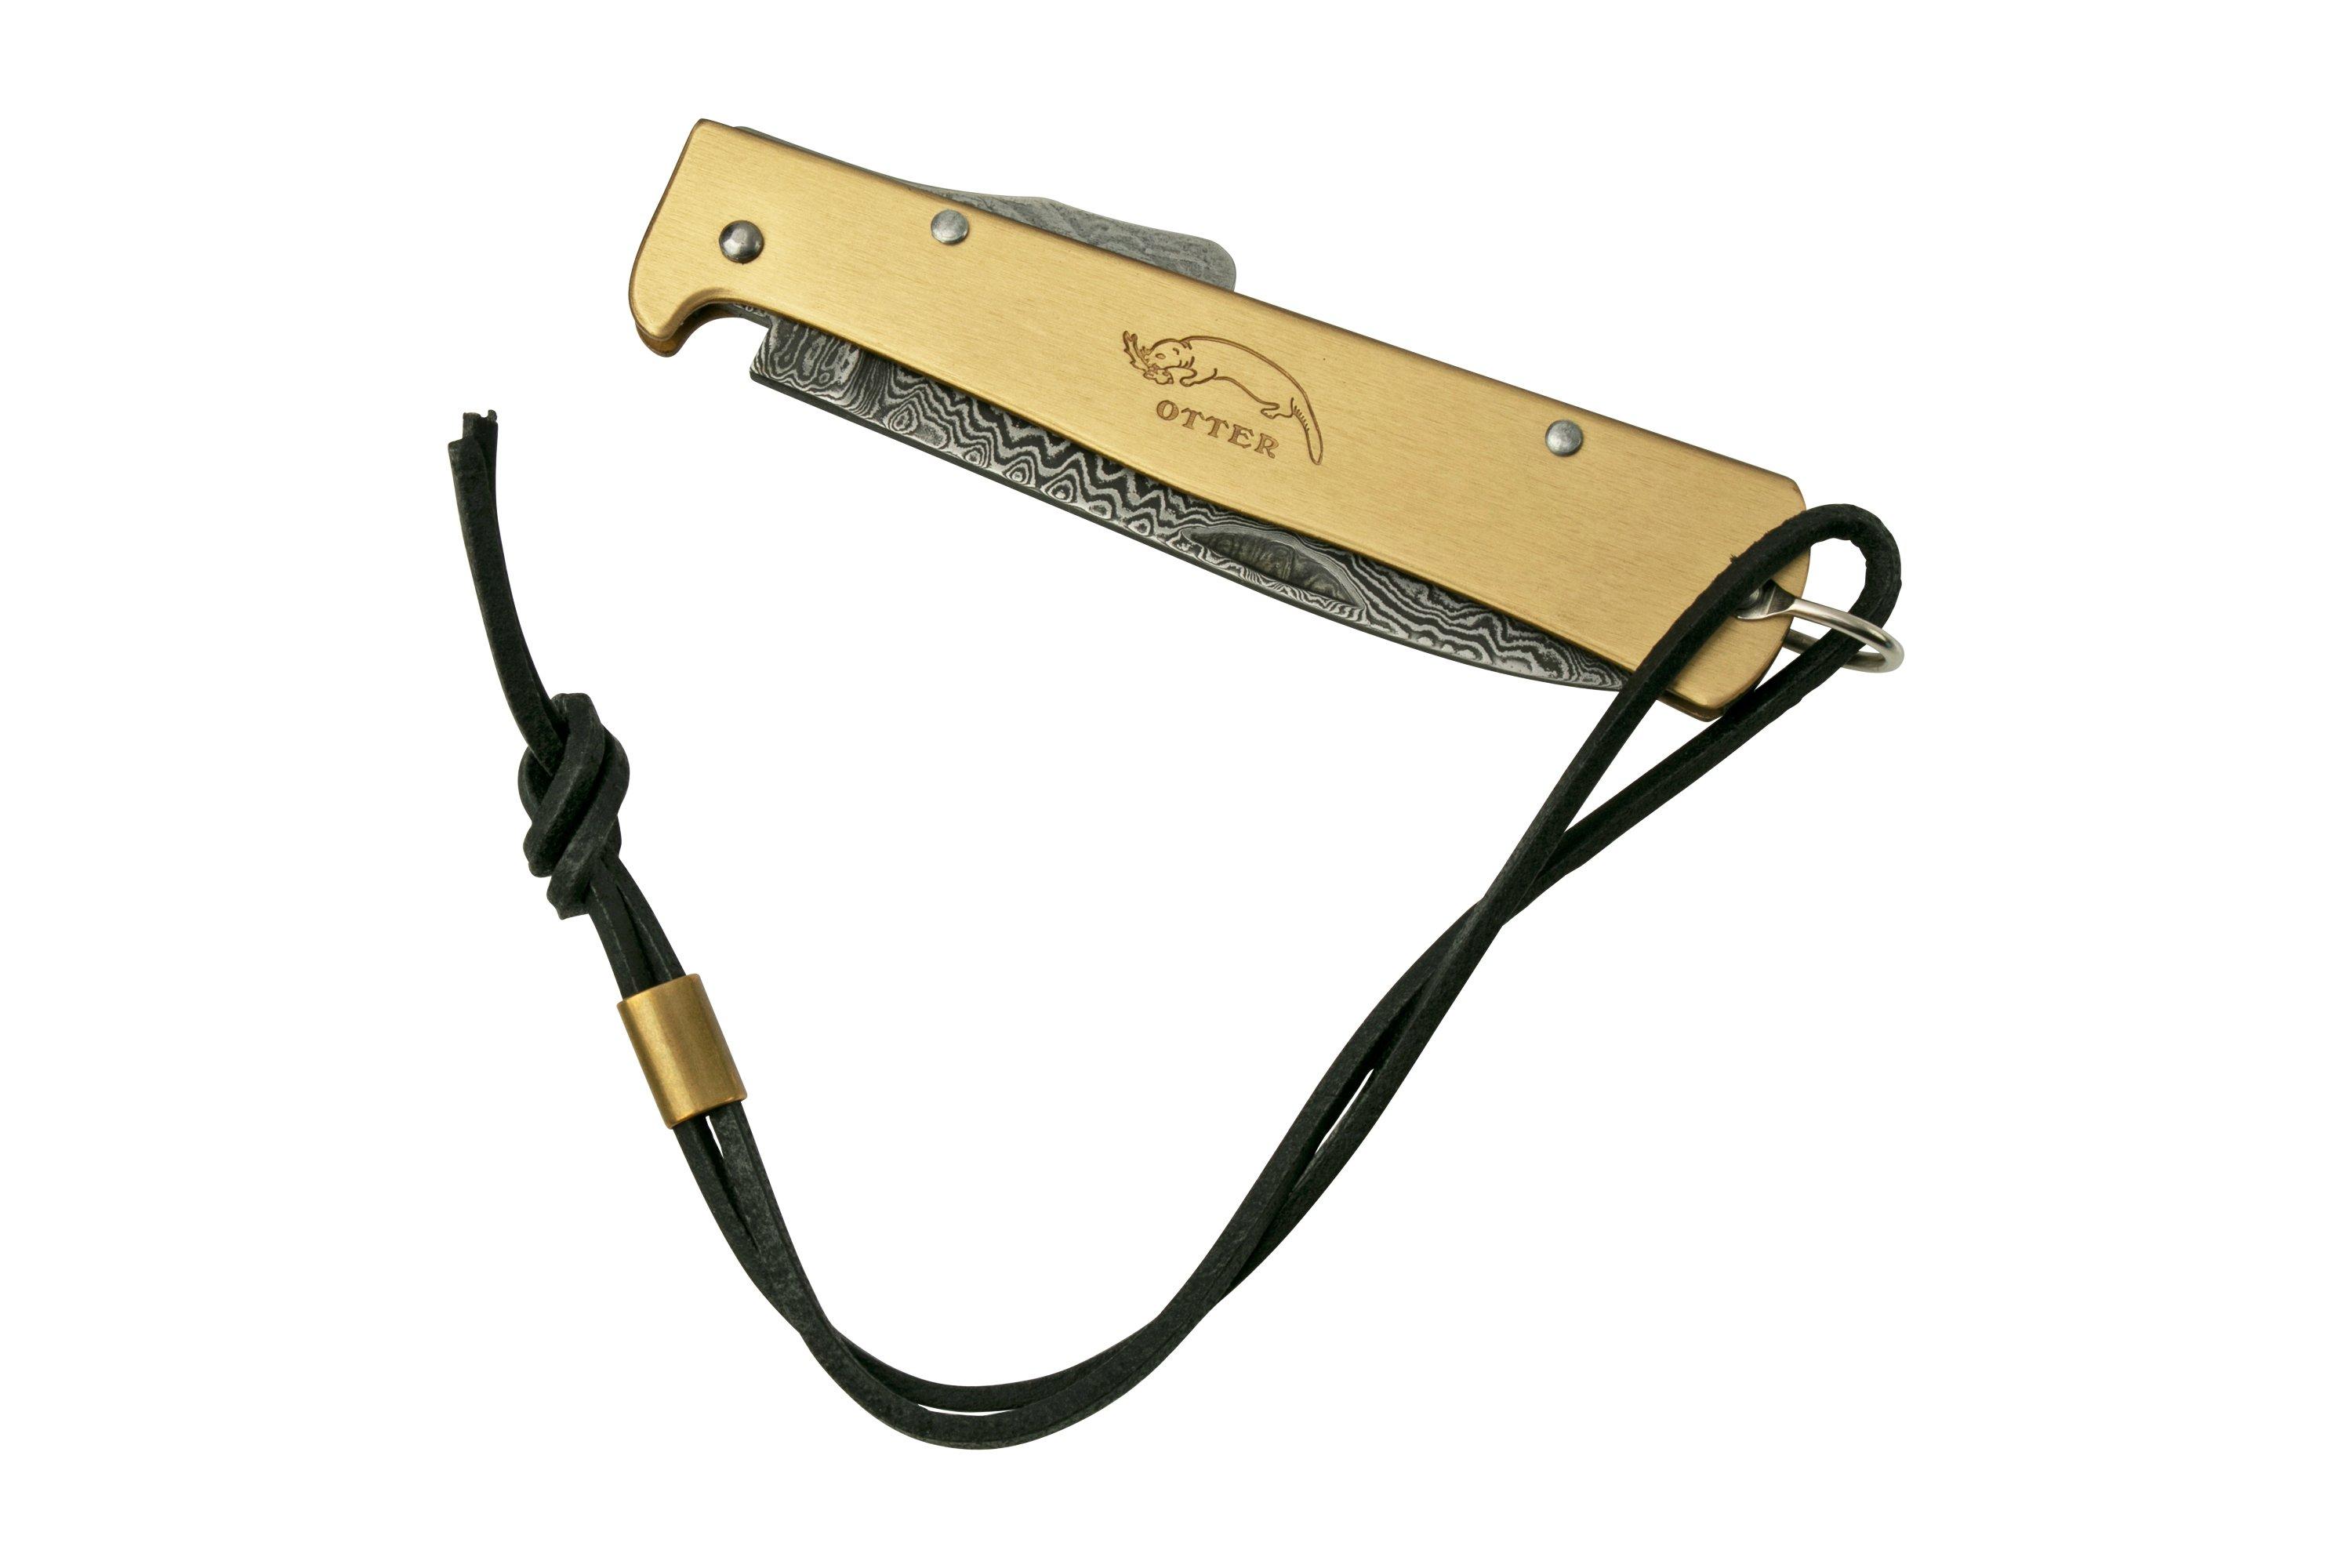 Otter Mercator 10-636 RG Large Copper Carbon Pocket clip, pocket knife